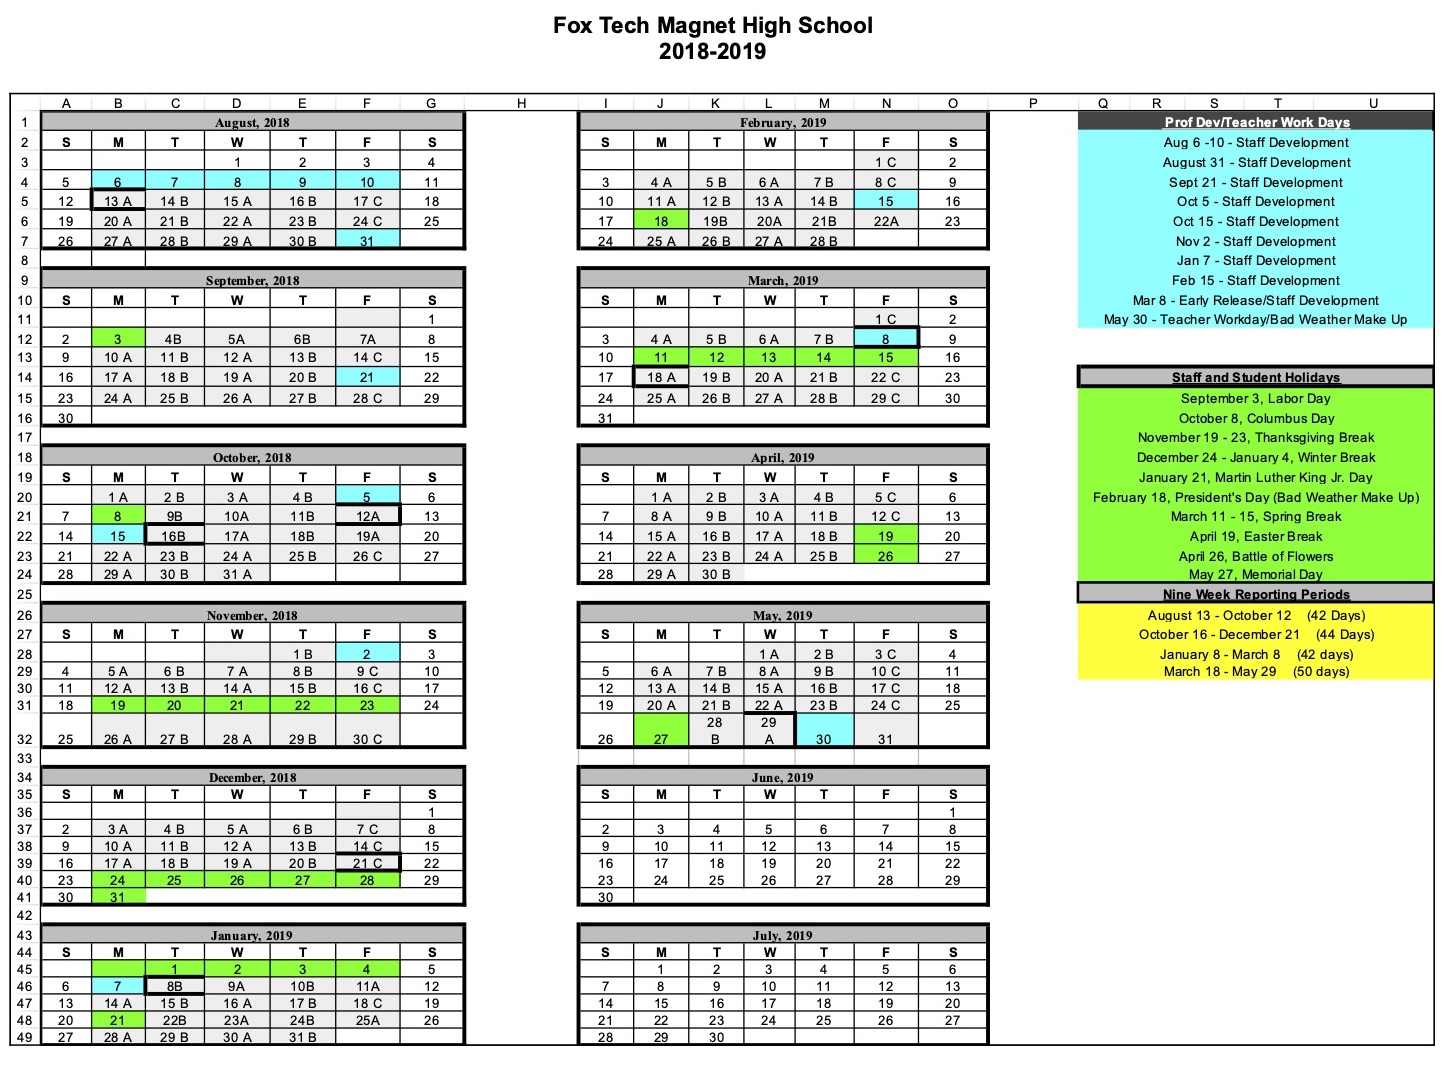 Fox Tech High School - Calendar